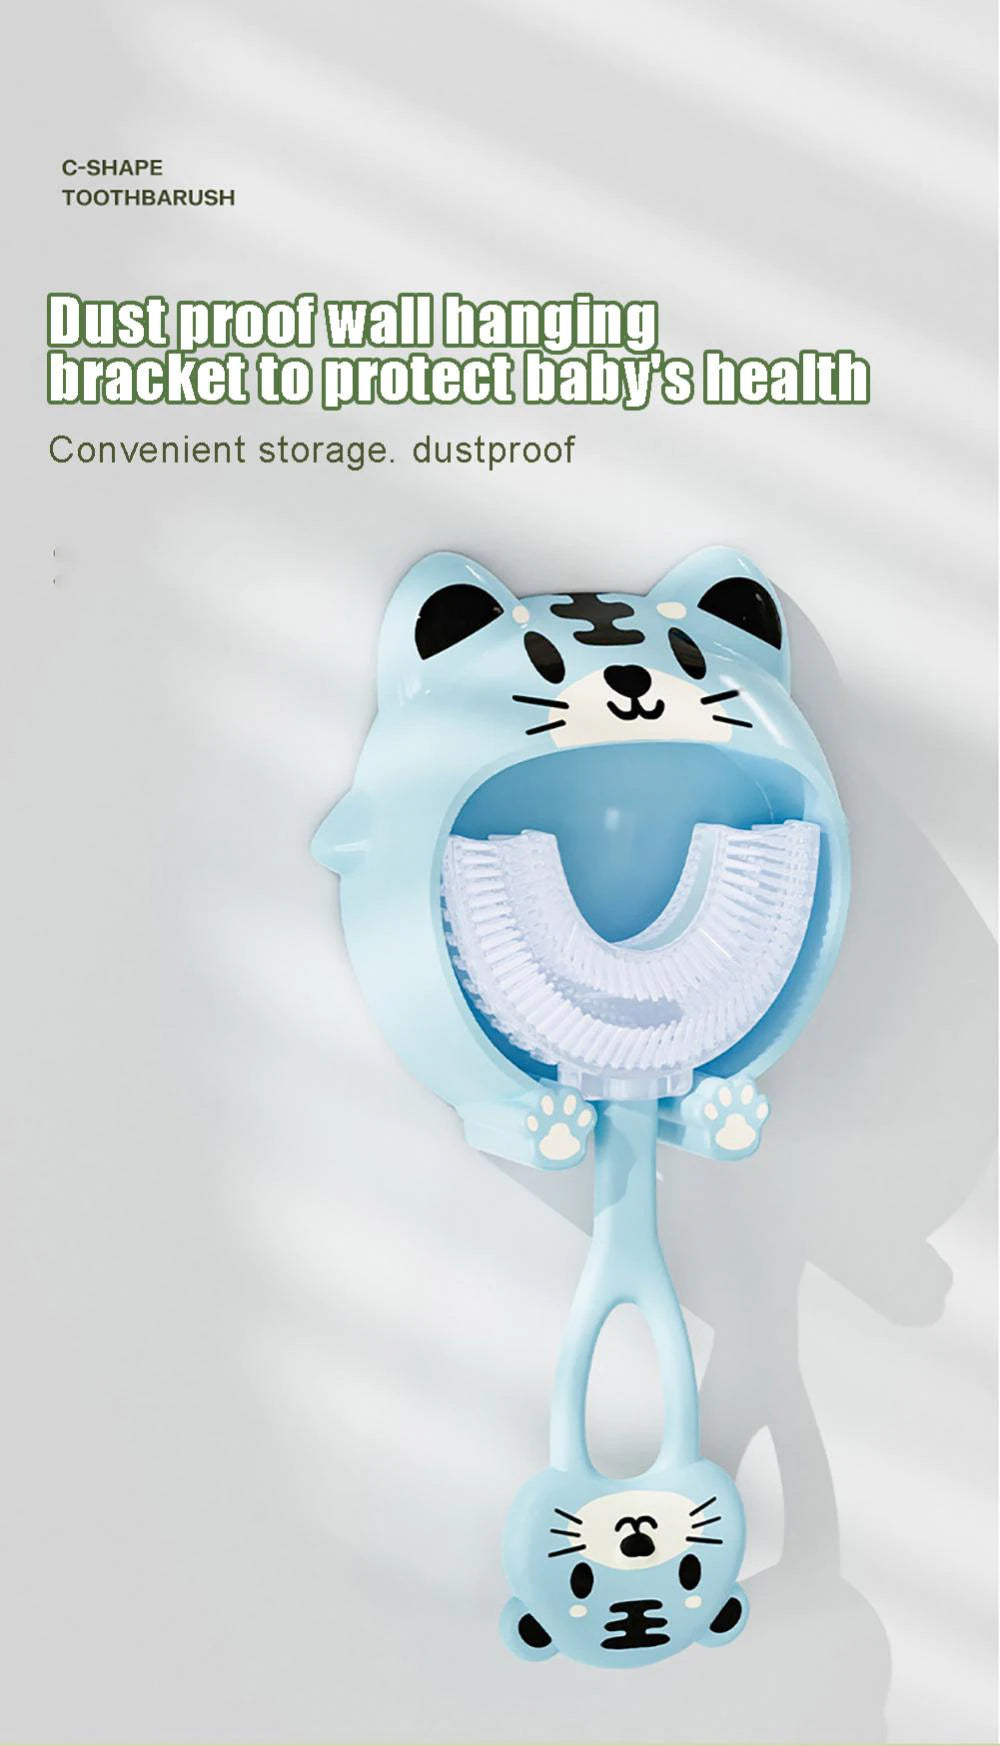 U-shaped Children's Toothbrush